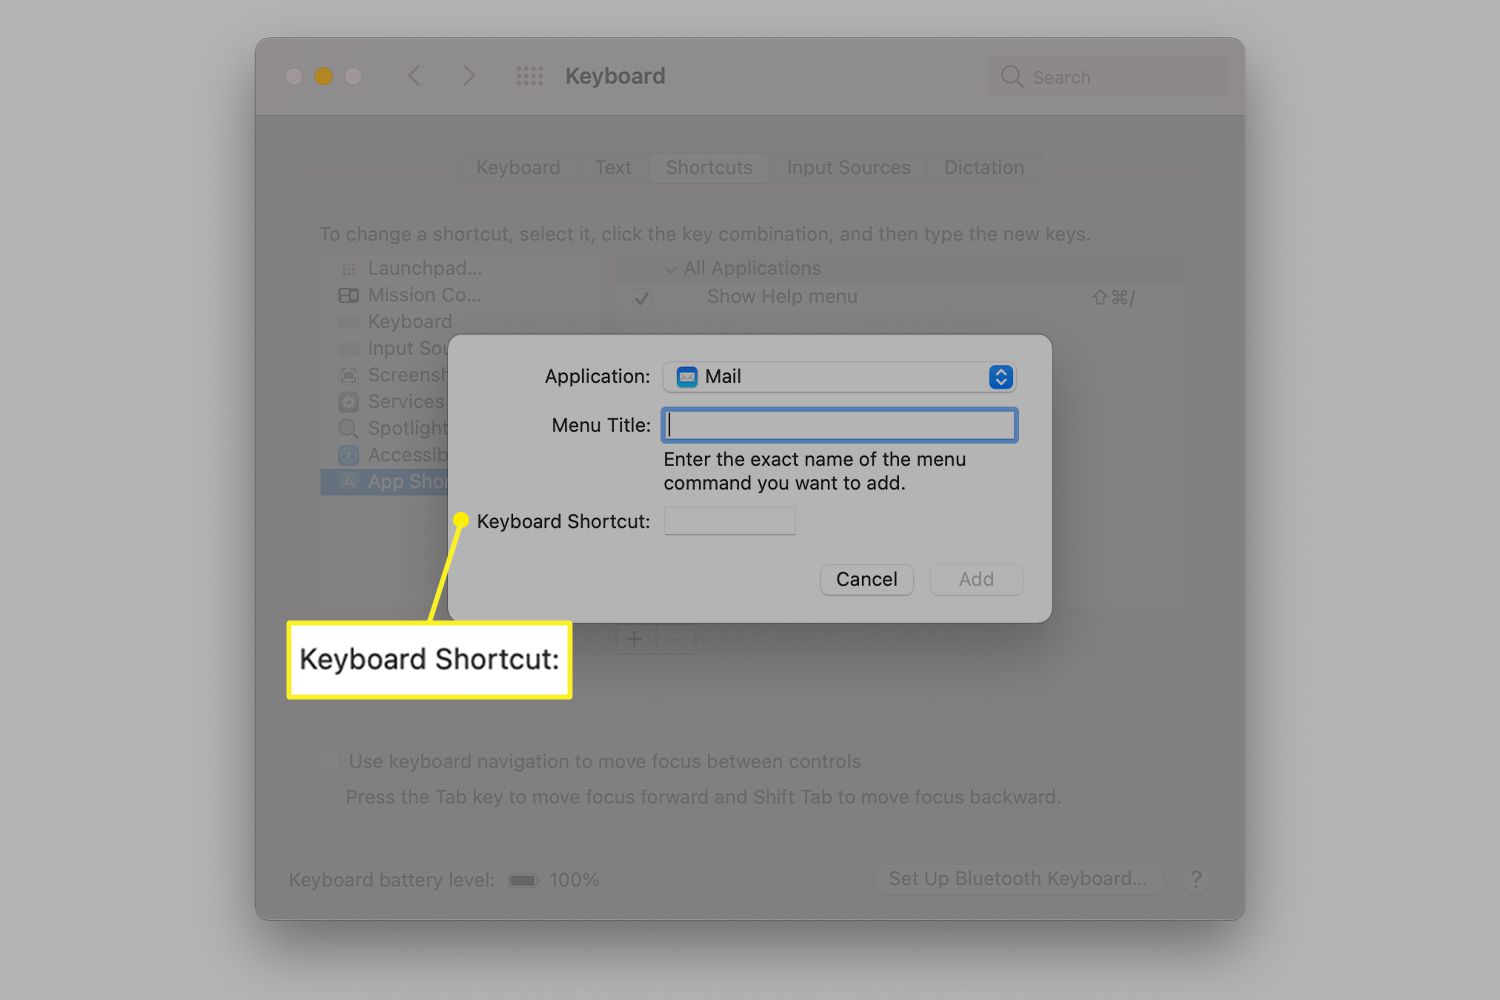 Keyboard Shortcut field in Mac Keyboard preferences